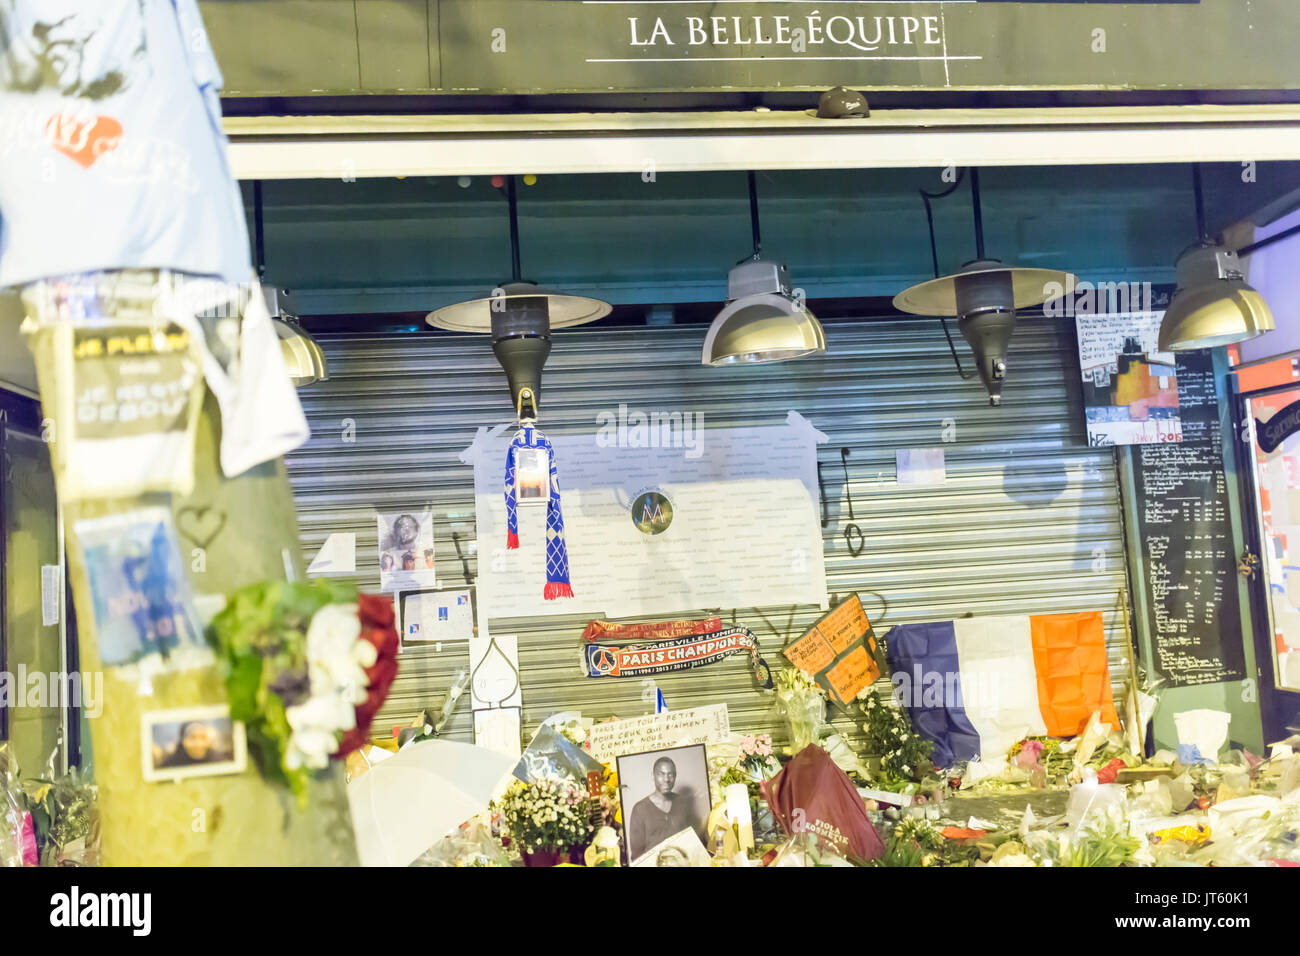 La Belle équipe Restaurant und Terrasse. Spontane Hommage an die Opfer des Terroranschlags in Paris, den 13. November 2015. Stockfoto